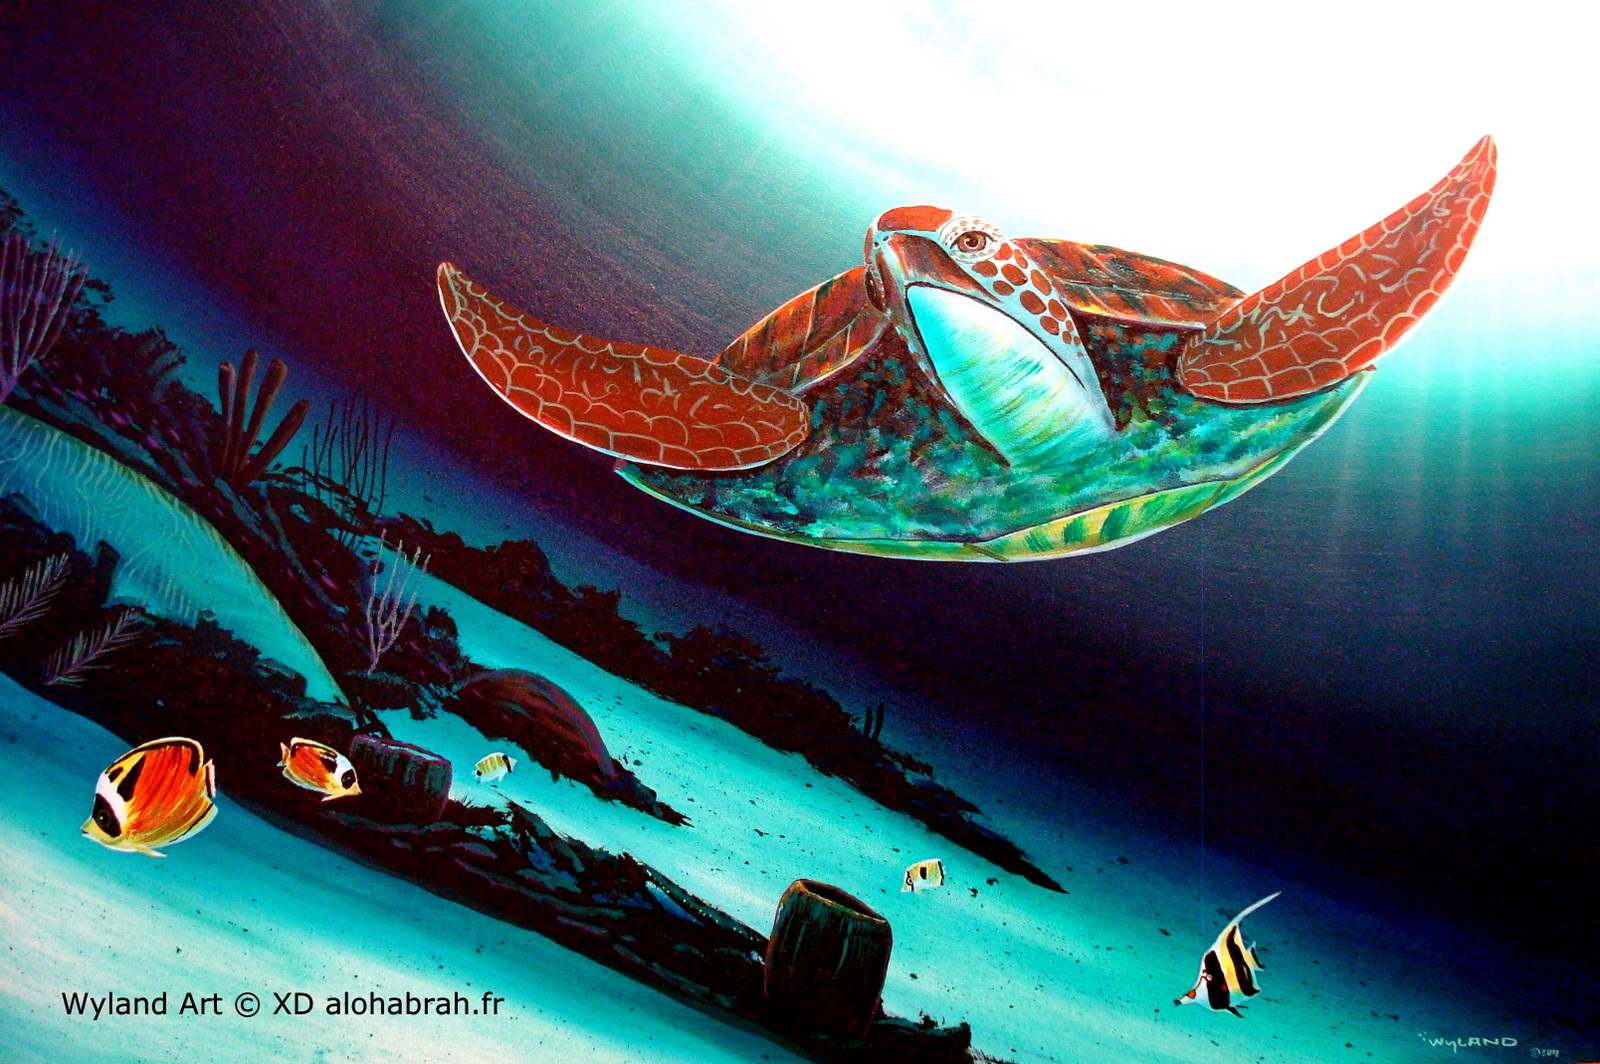 Hawaiian turtle - Wyland Art © XD alohabrah.fr